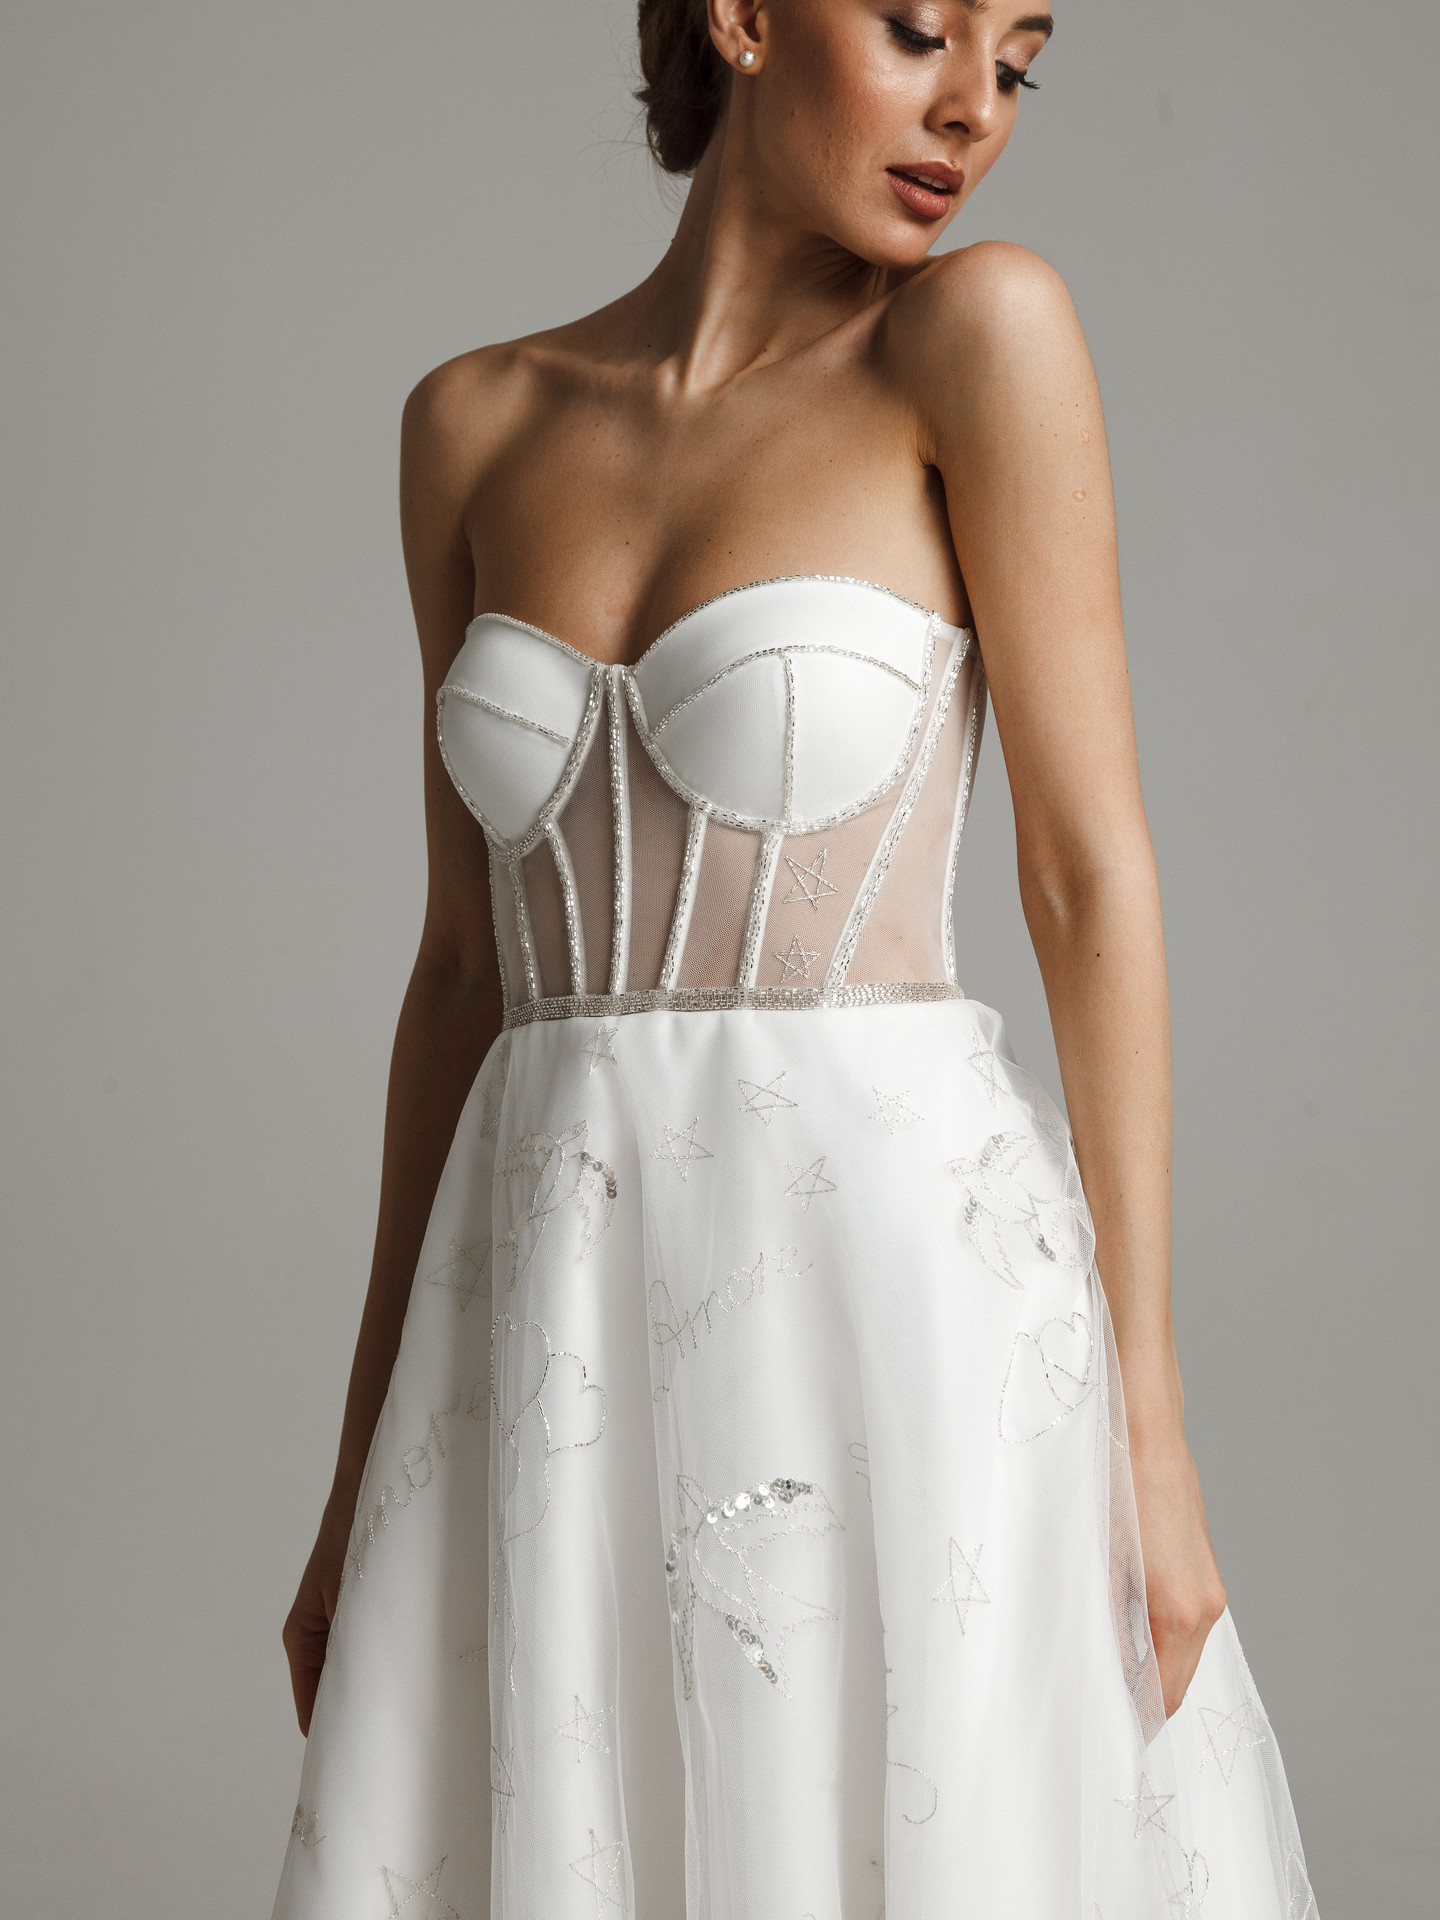 Платье Аморет, 2021, одежда, платье, свадебное, молочно-белый, А-силуэт, вышивка, шнуровка